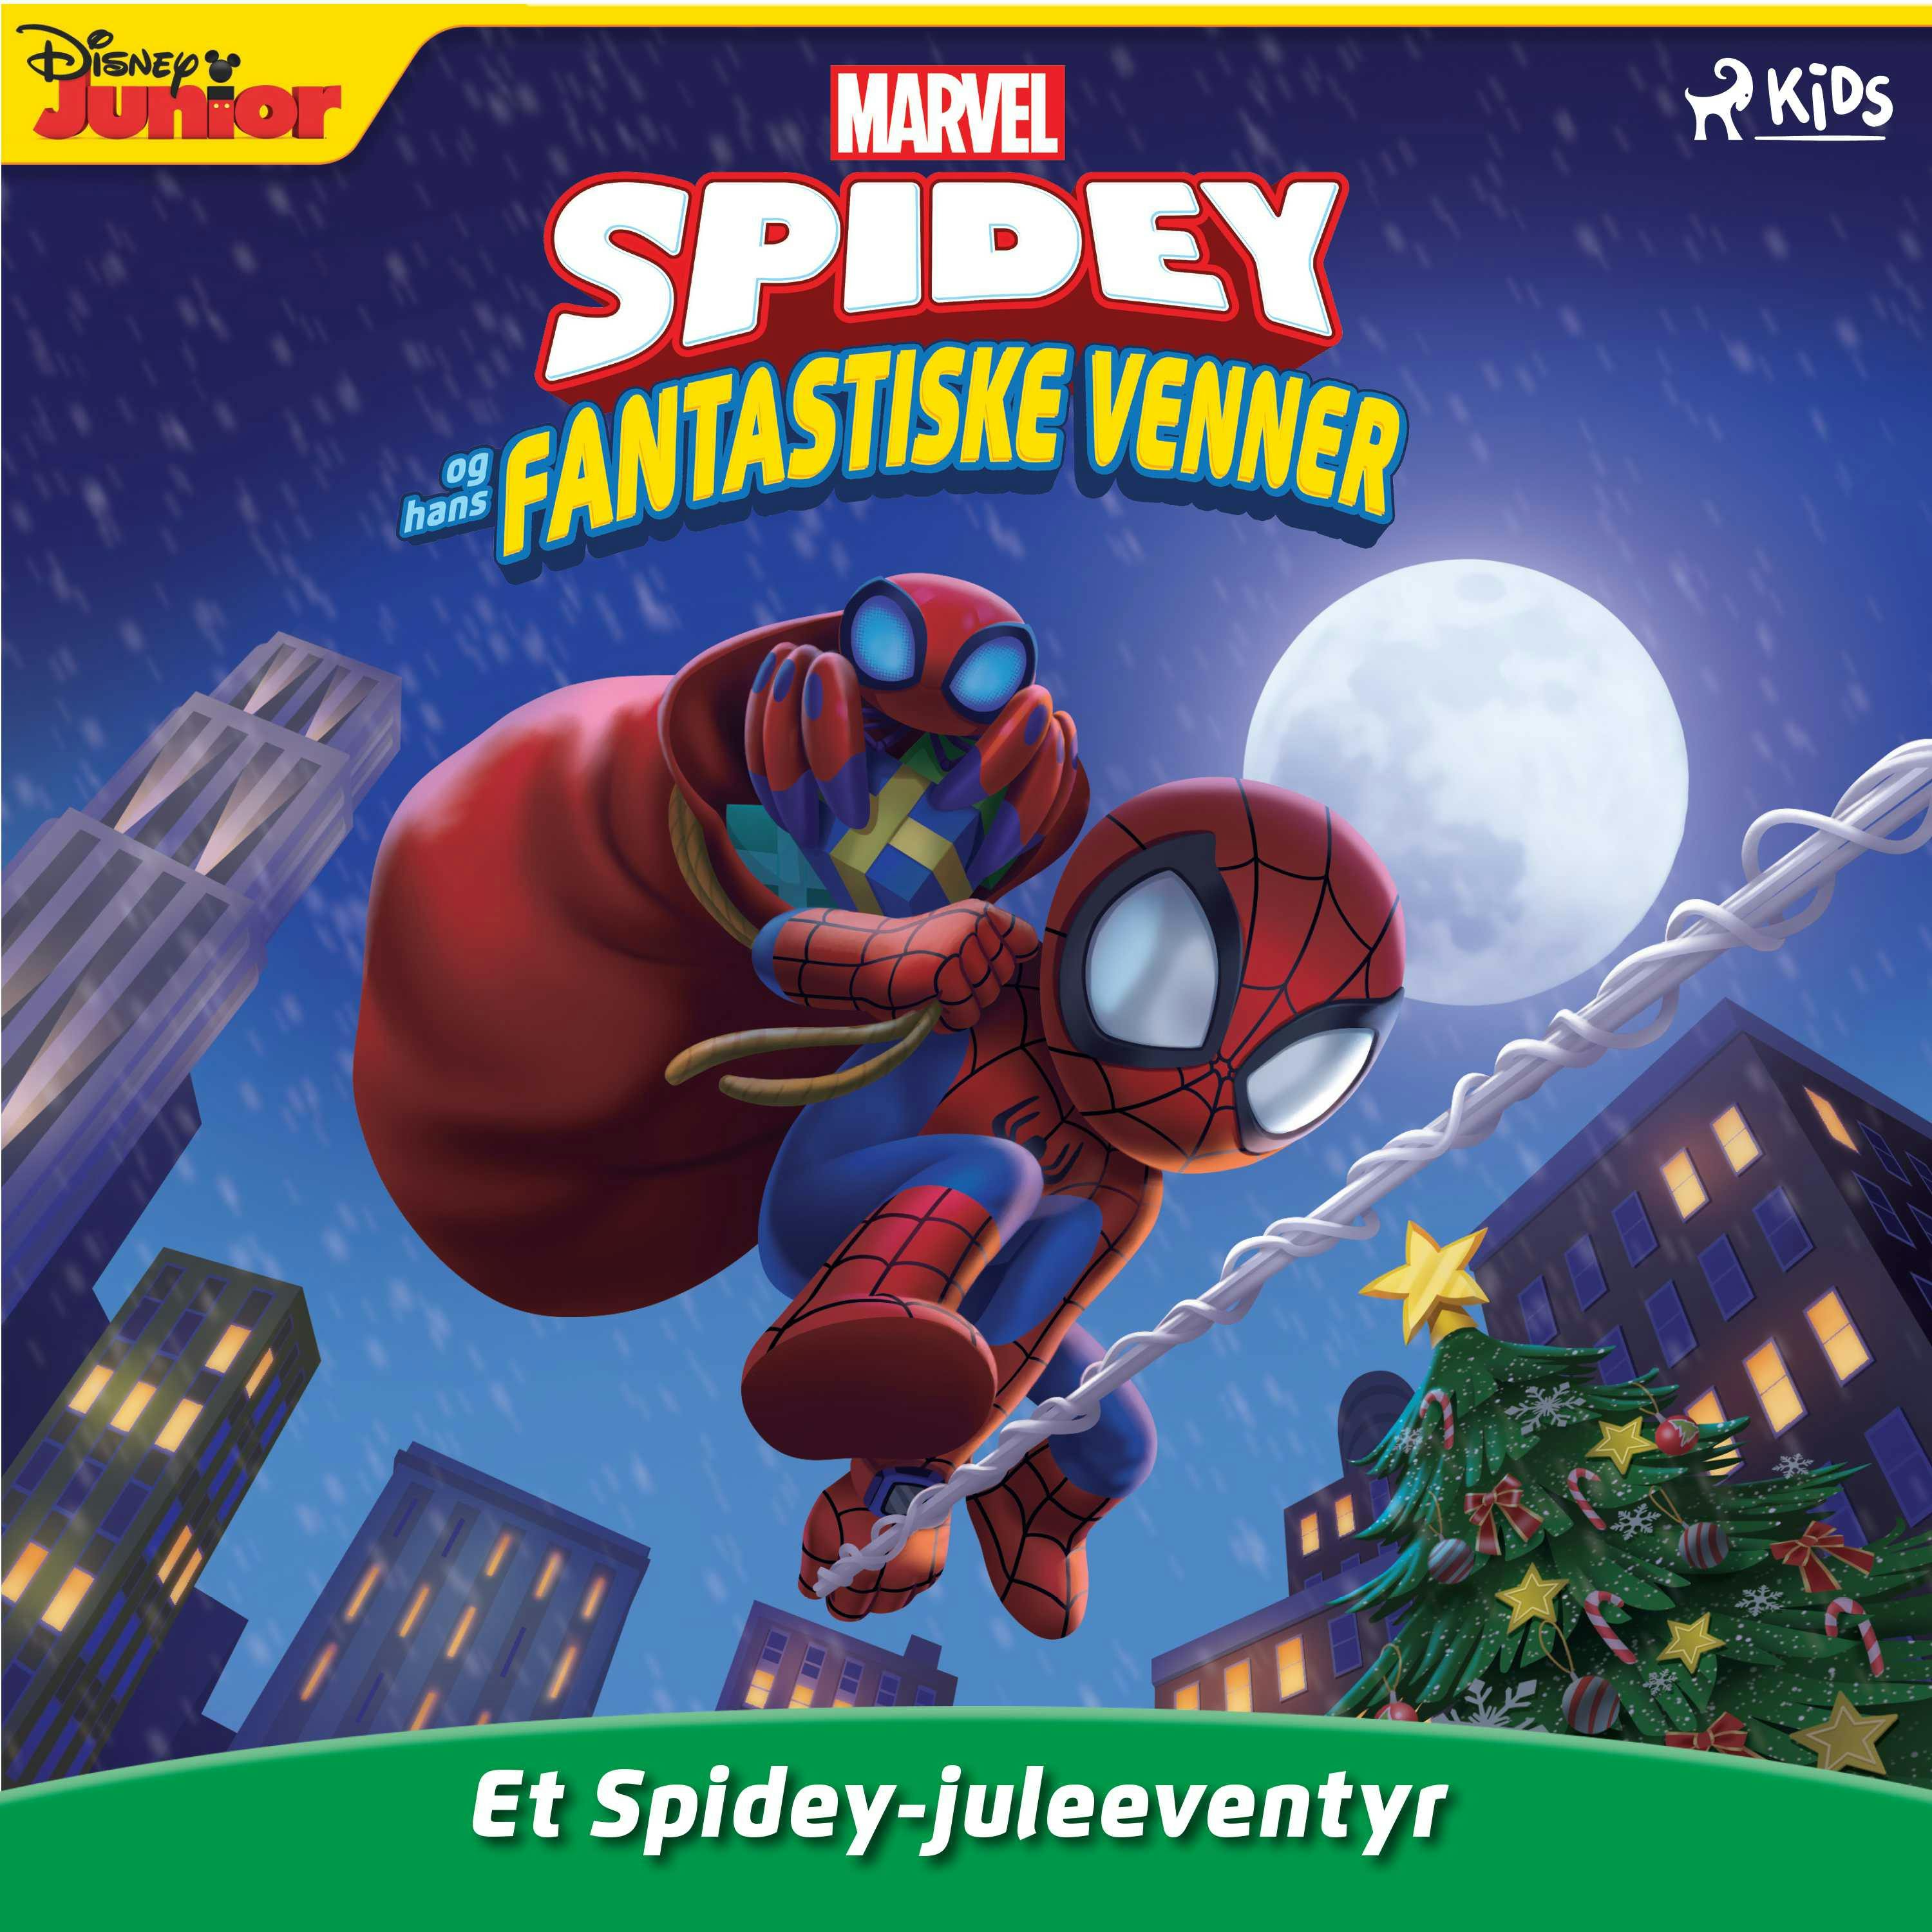 Spidey og hans fantastiske venner - Et Spidey-juleeventyr - Marvel